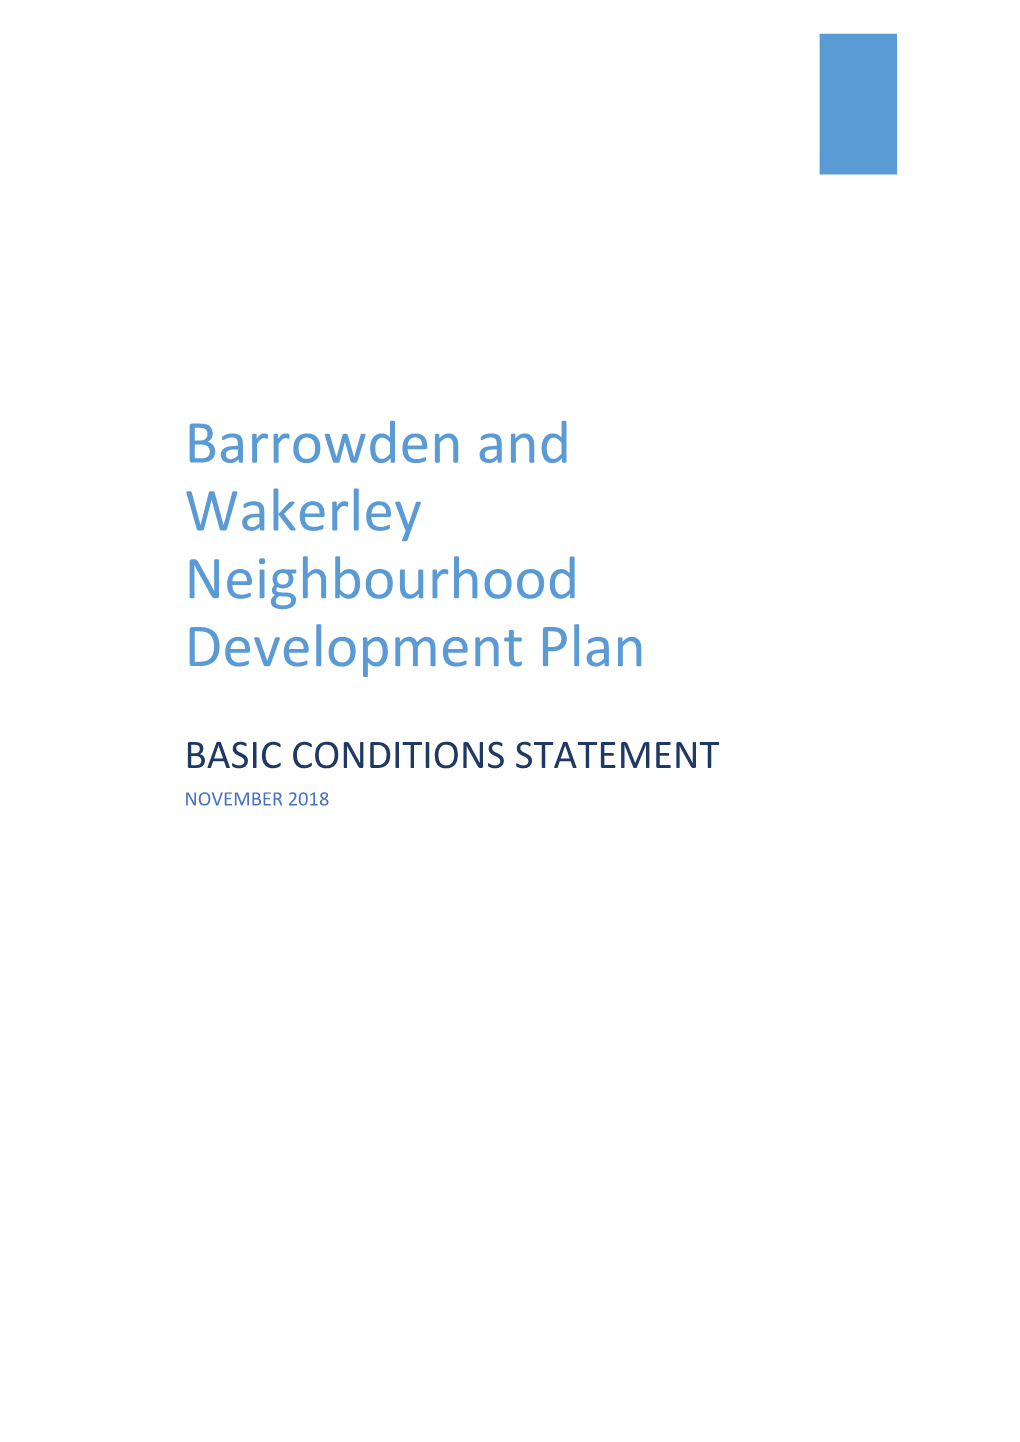 Barrowden and Wakerley Neighbourhood Development Plan